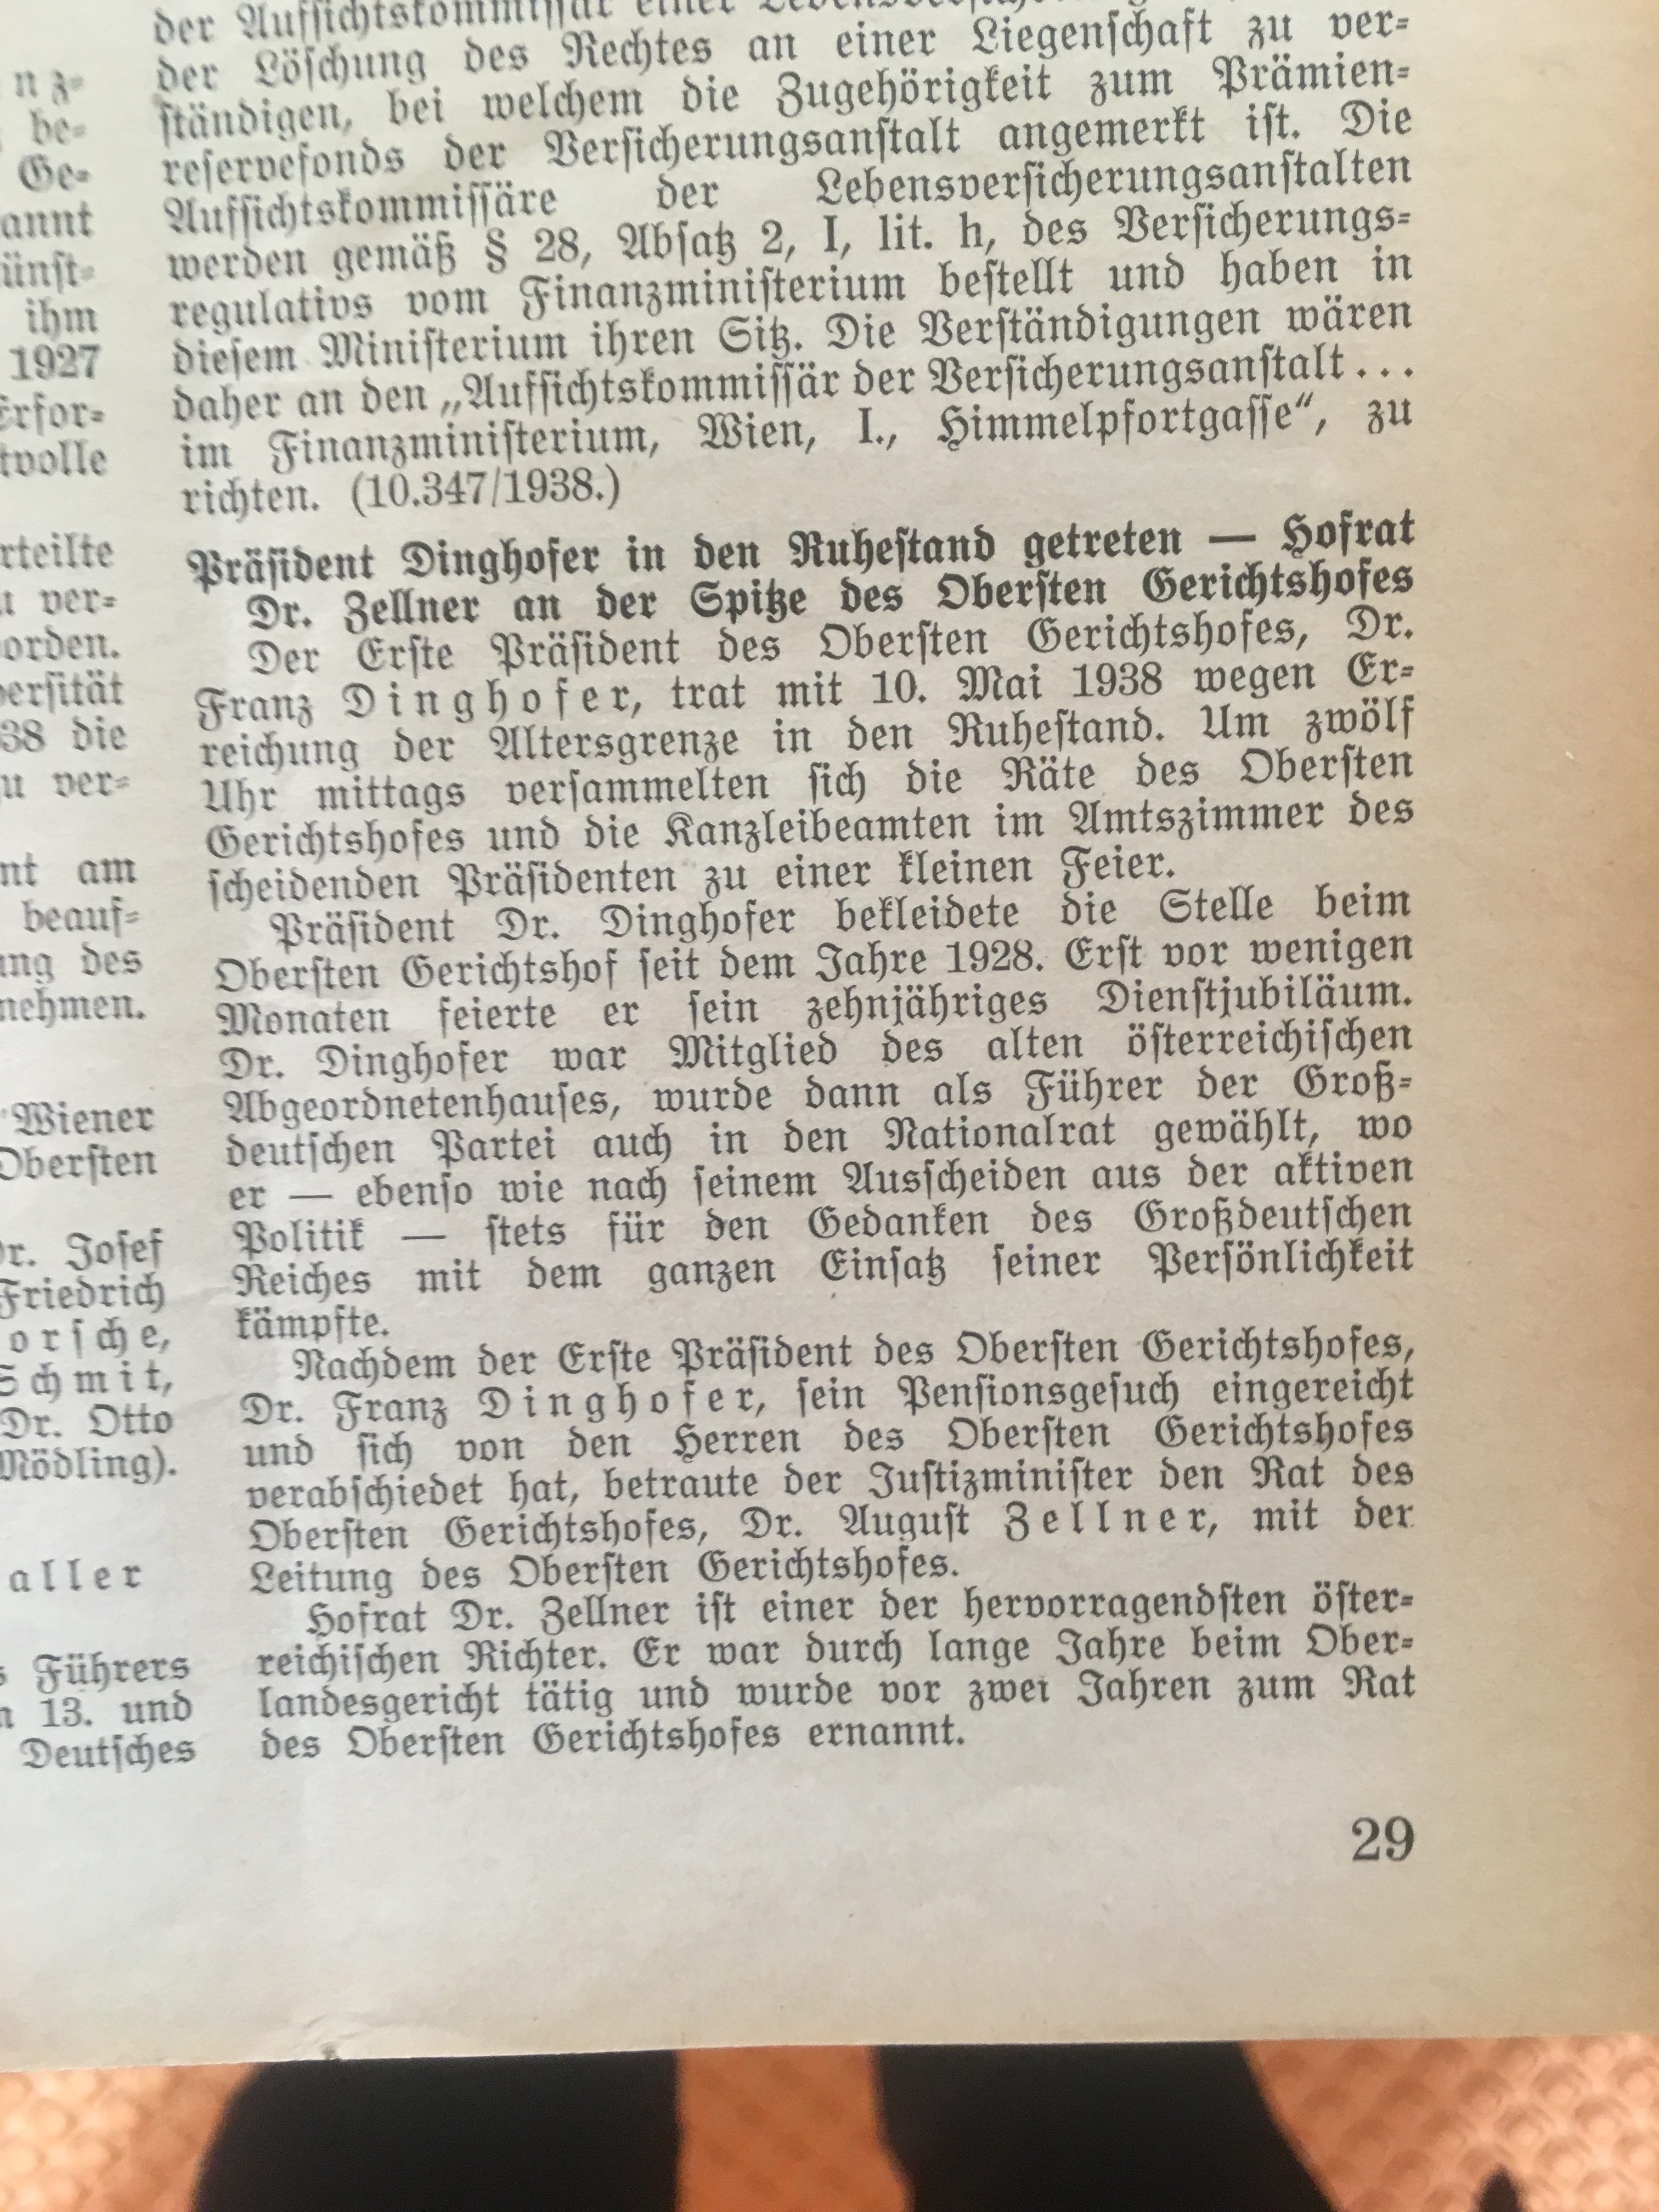 Deutsches Recht in Österreich, 1/2 (1938, S.29)